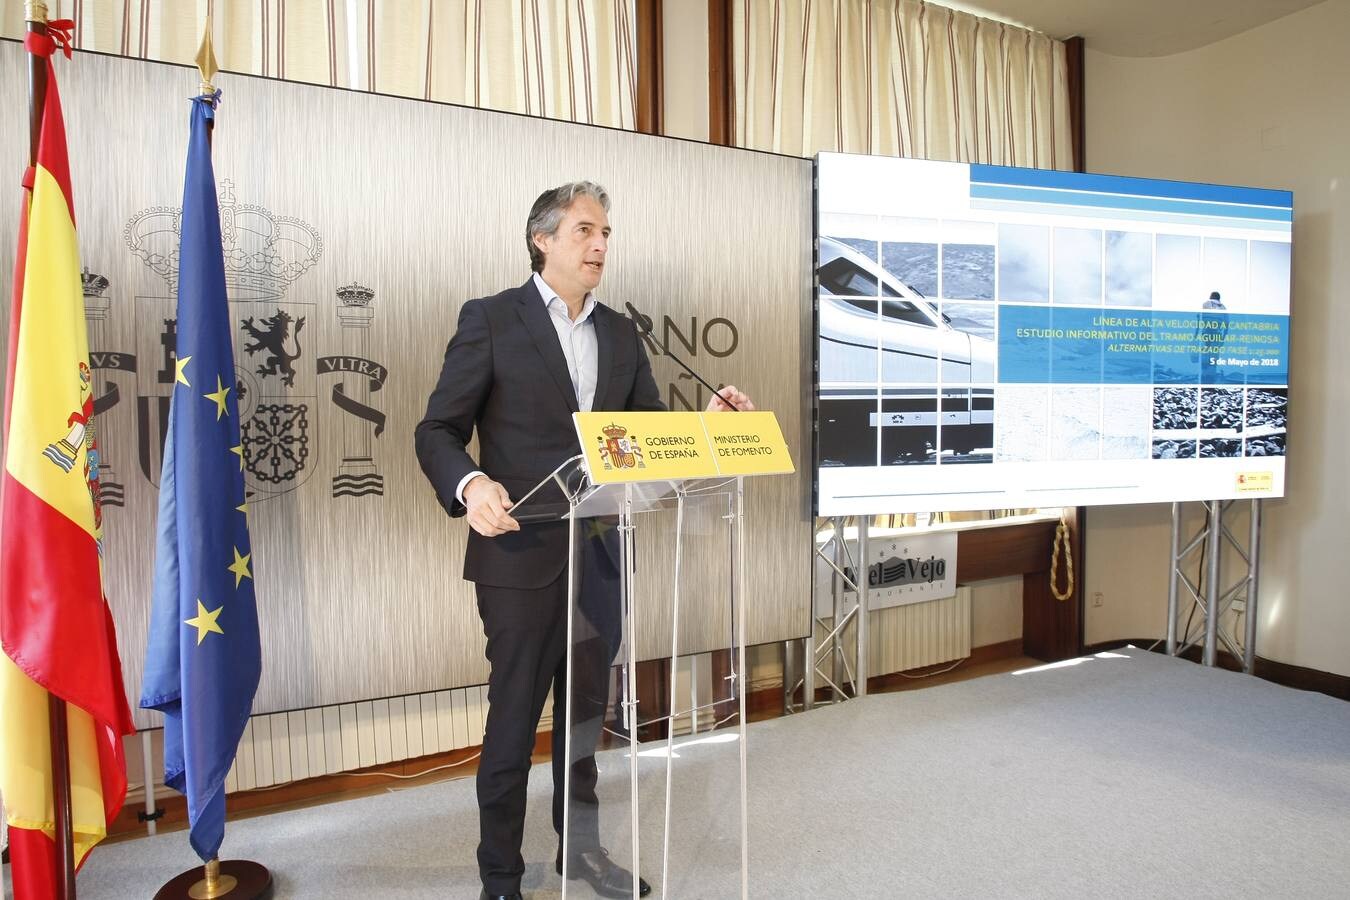 Fotos: El ministro De la Serna presenta el estudio informativo del tramo Aguilar-Reinosa de la línea de Alta Velocidad a Cantabria